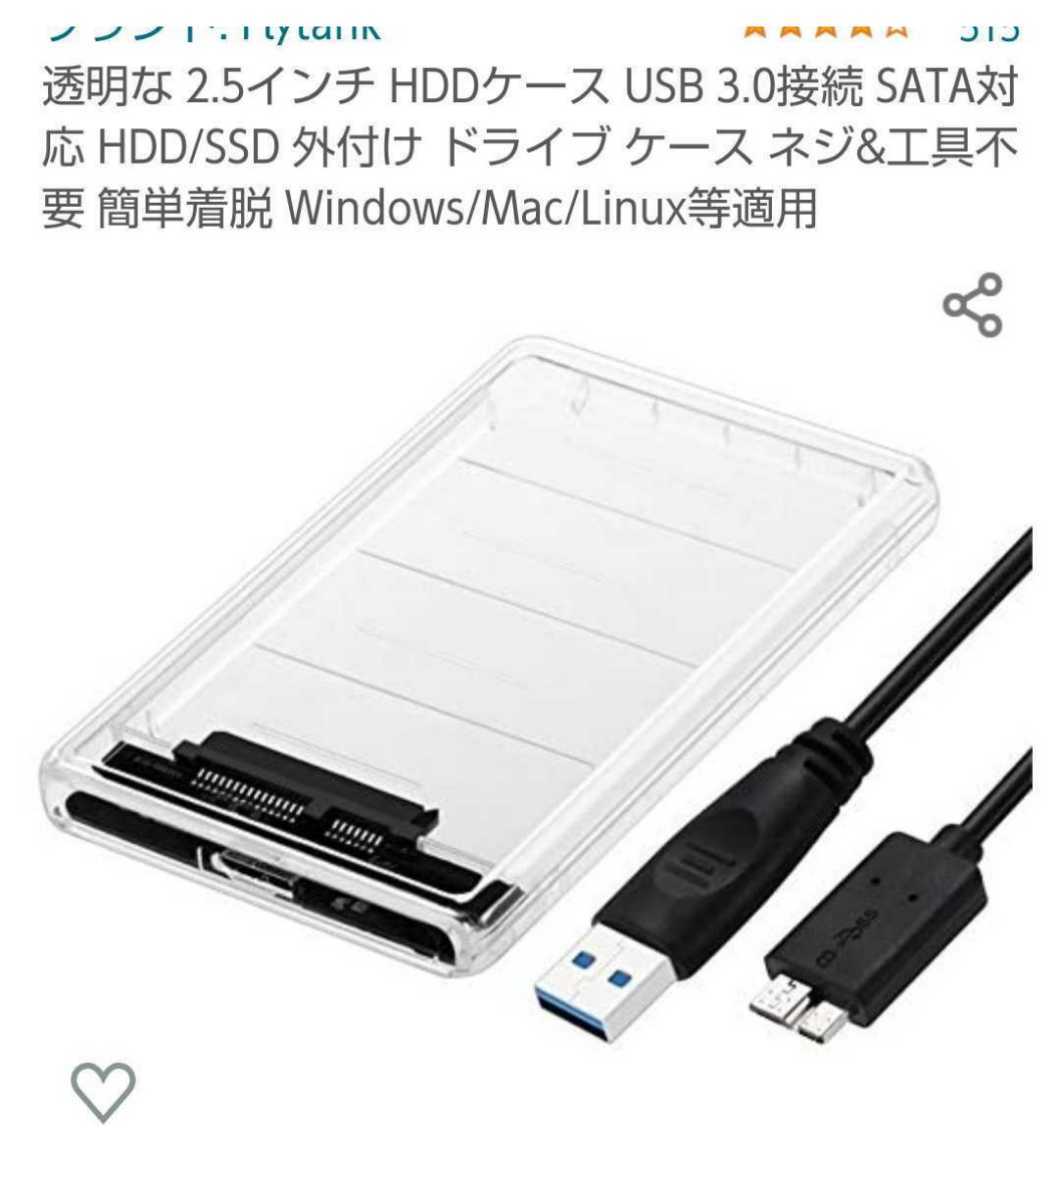 使用時間極少USB3.0外付けポータブルHDD(HDD WD BLUE)